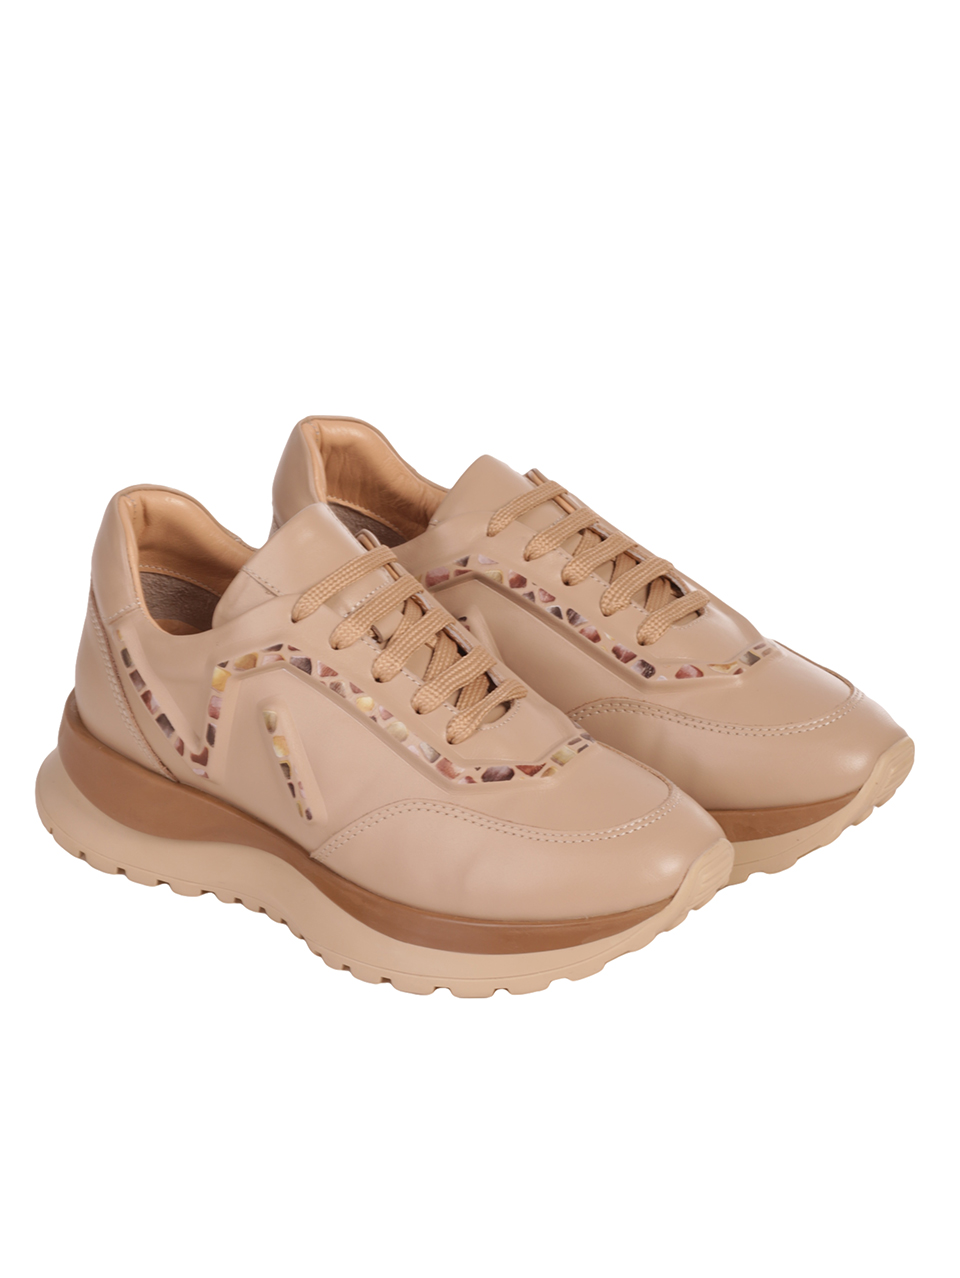 Дамски обувки от естествена кожа в бежово 3AT-23725 beige